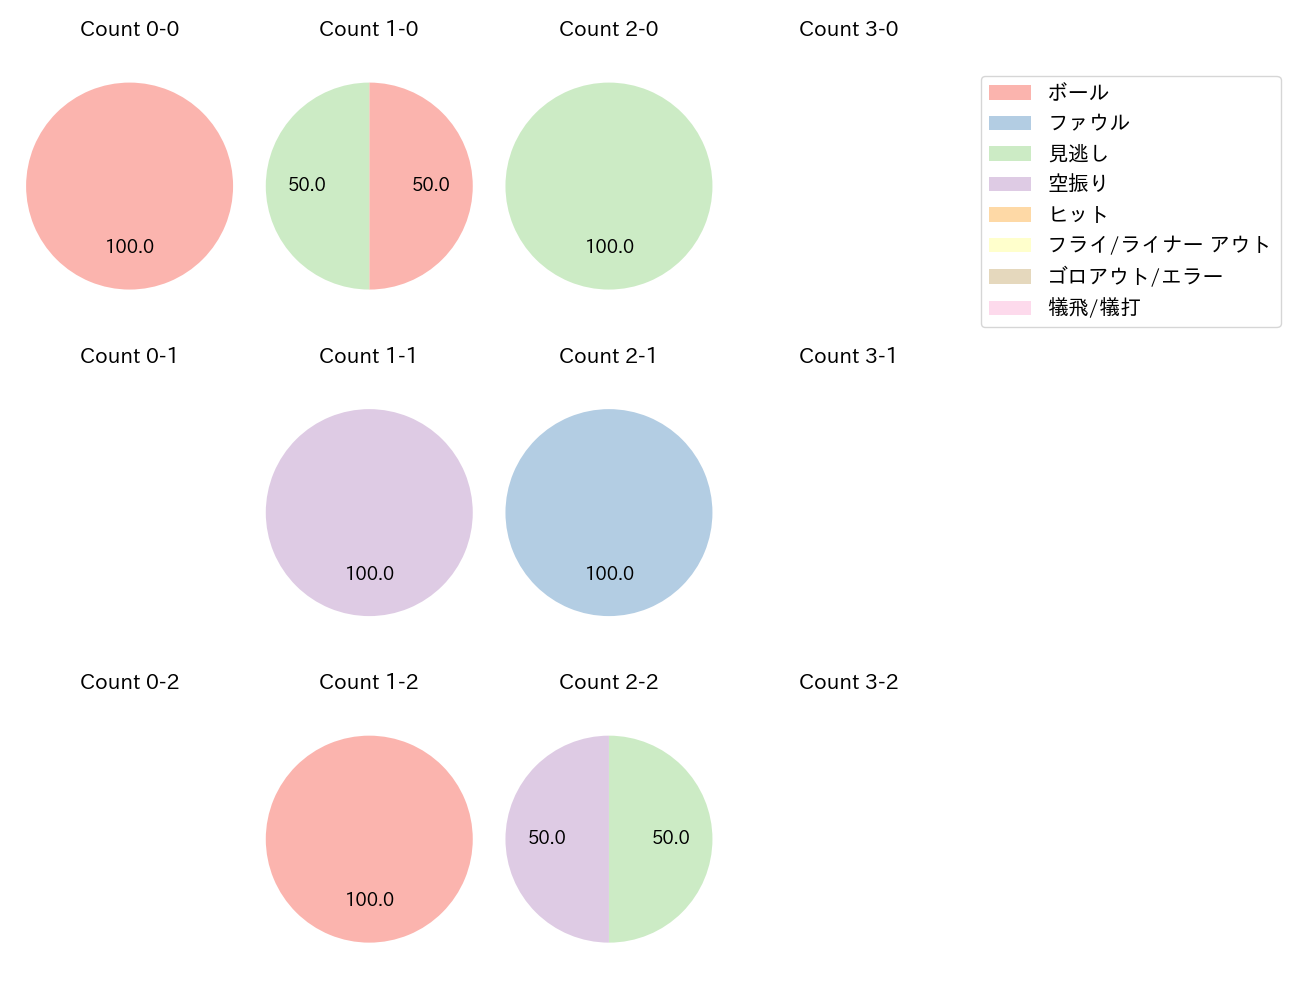 瀧中 瞭太の球数分布(2021年6月)